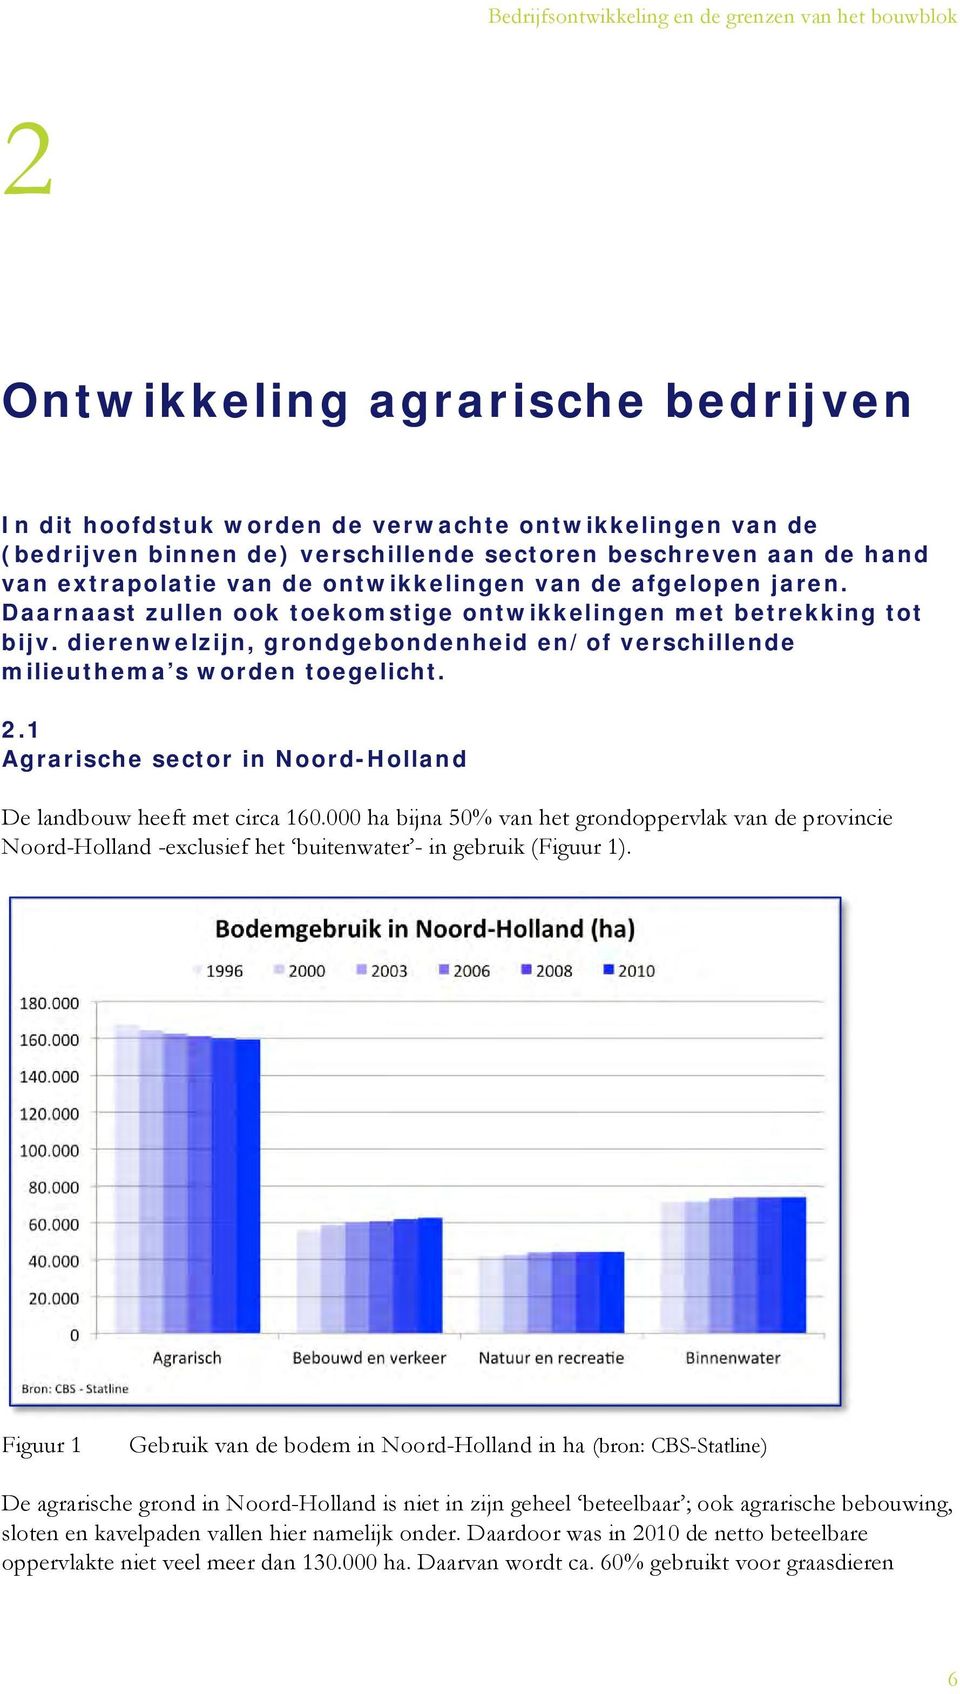 1 Agrarische sector in Noord-Holland De landbouw heeft met circa 160.000 ha bijna 50% van het grondoppervlak van de provincie Noord-Holland -exclusief het buitenwater - in gebruik (Figuur 1).